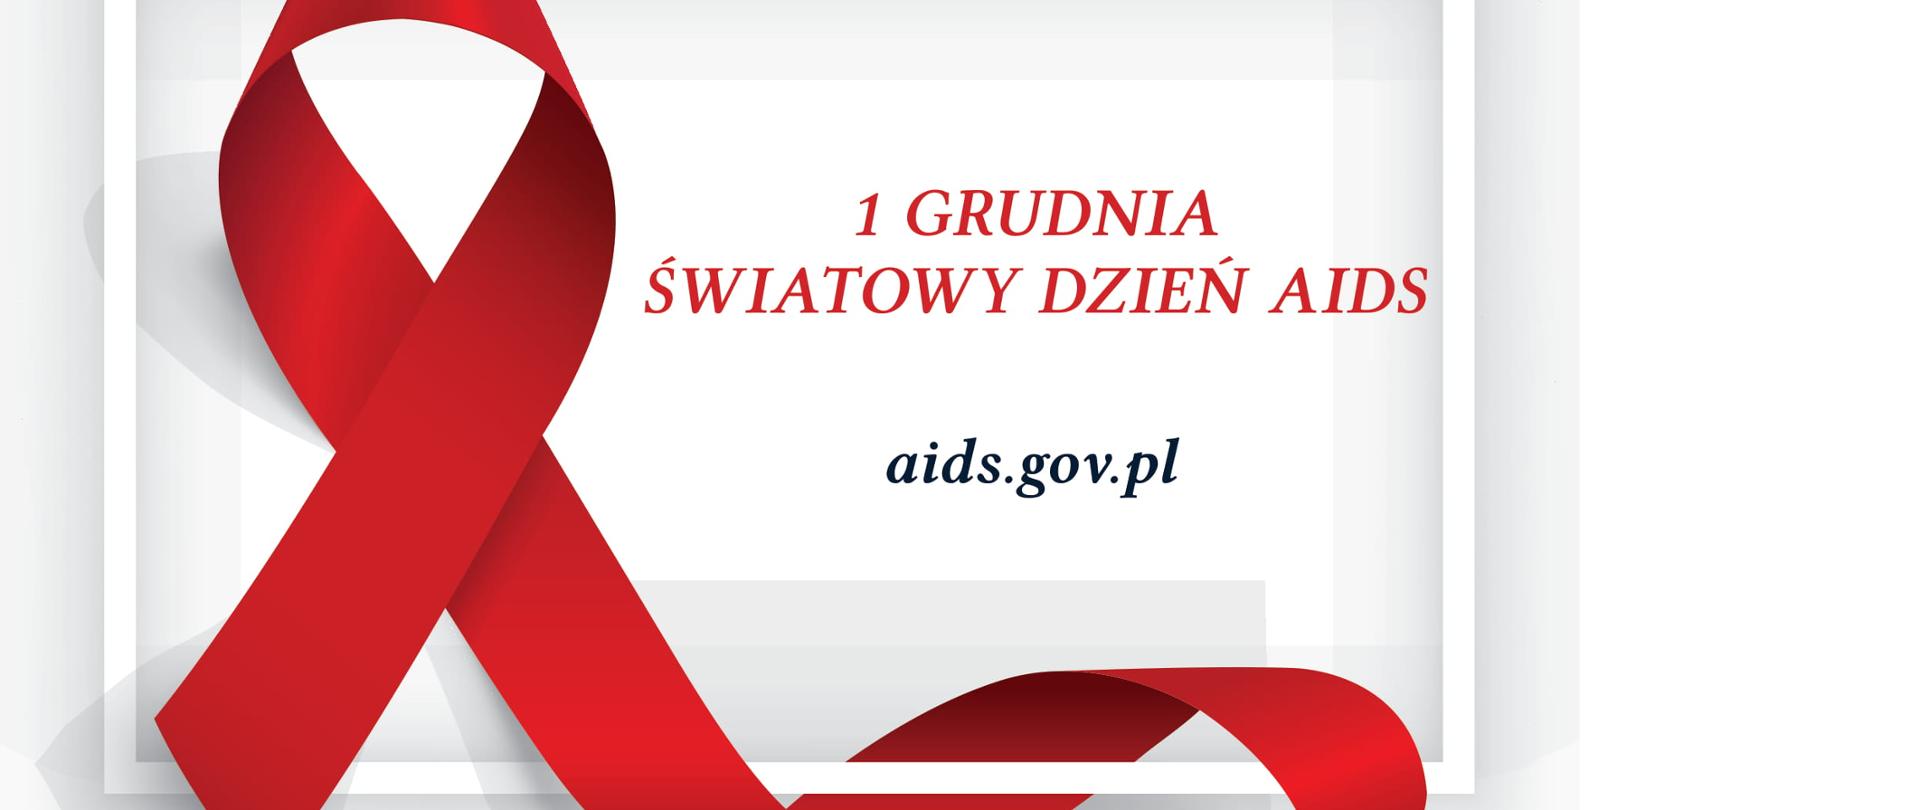 czerwona kokarda symbilizująca pamięć o chorych na AIDS z napisem 1 grudnia Światowy Dzień Aids 